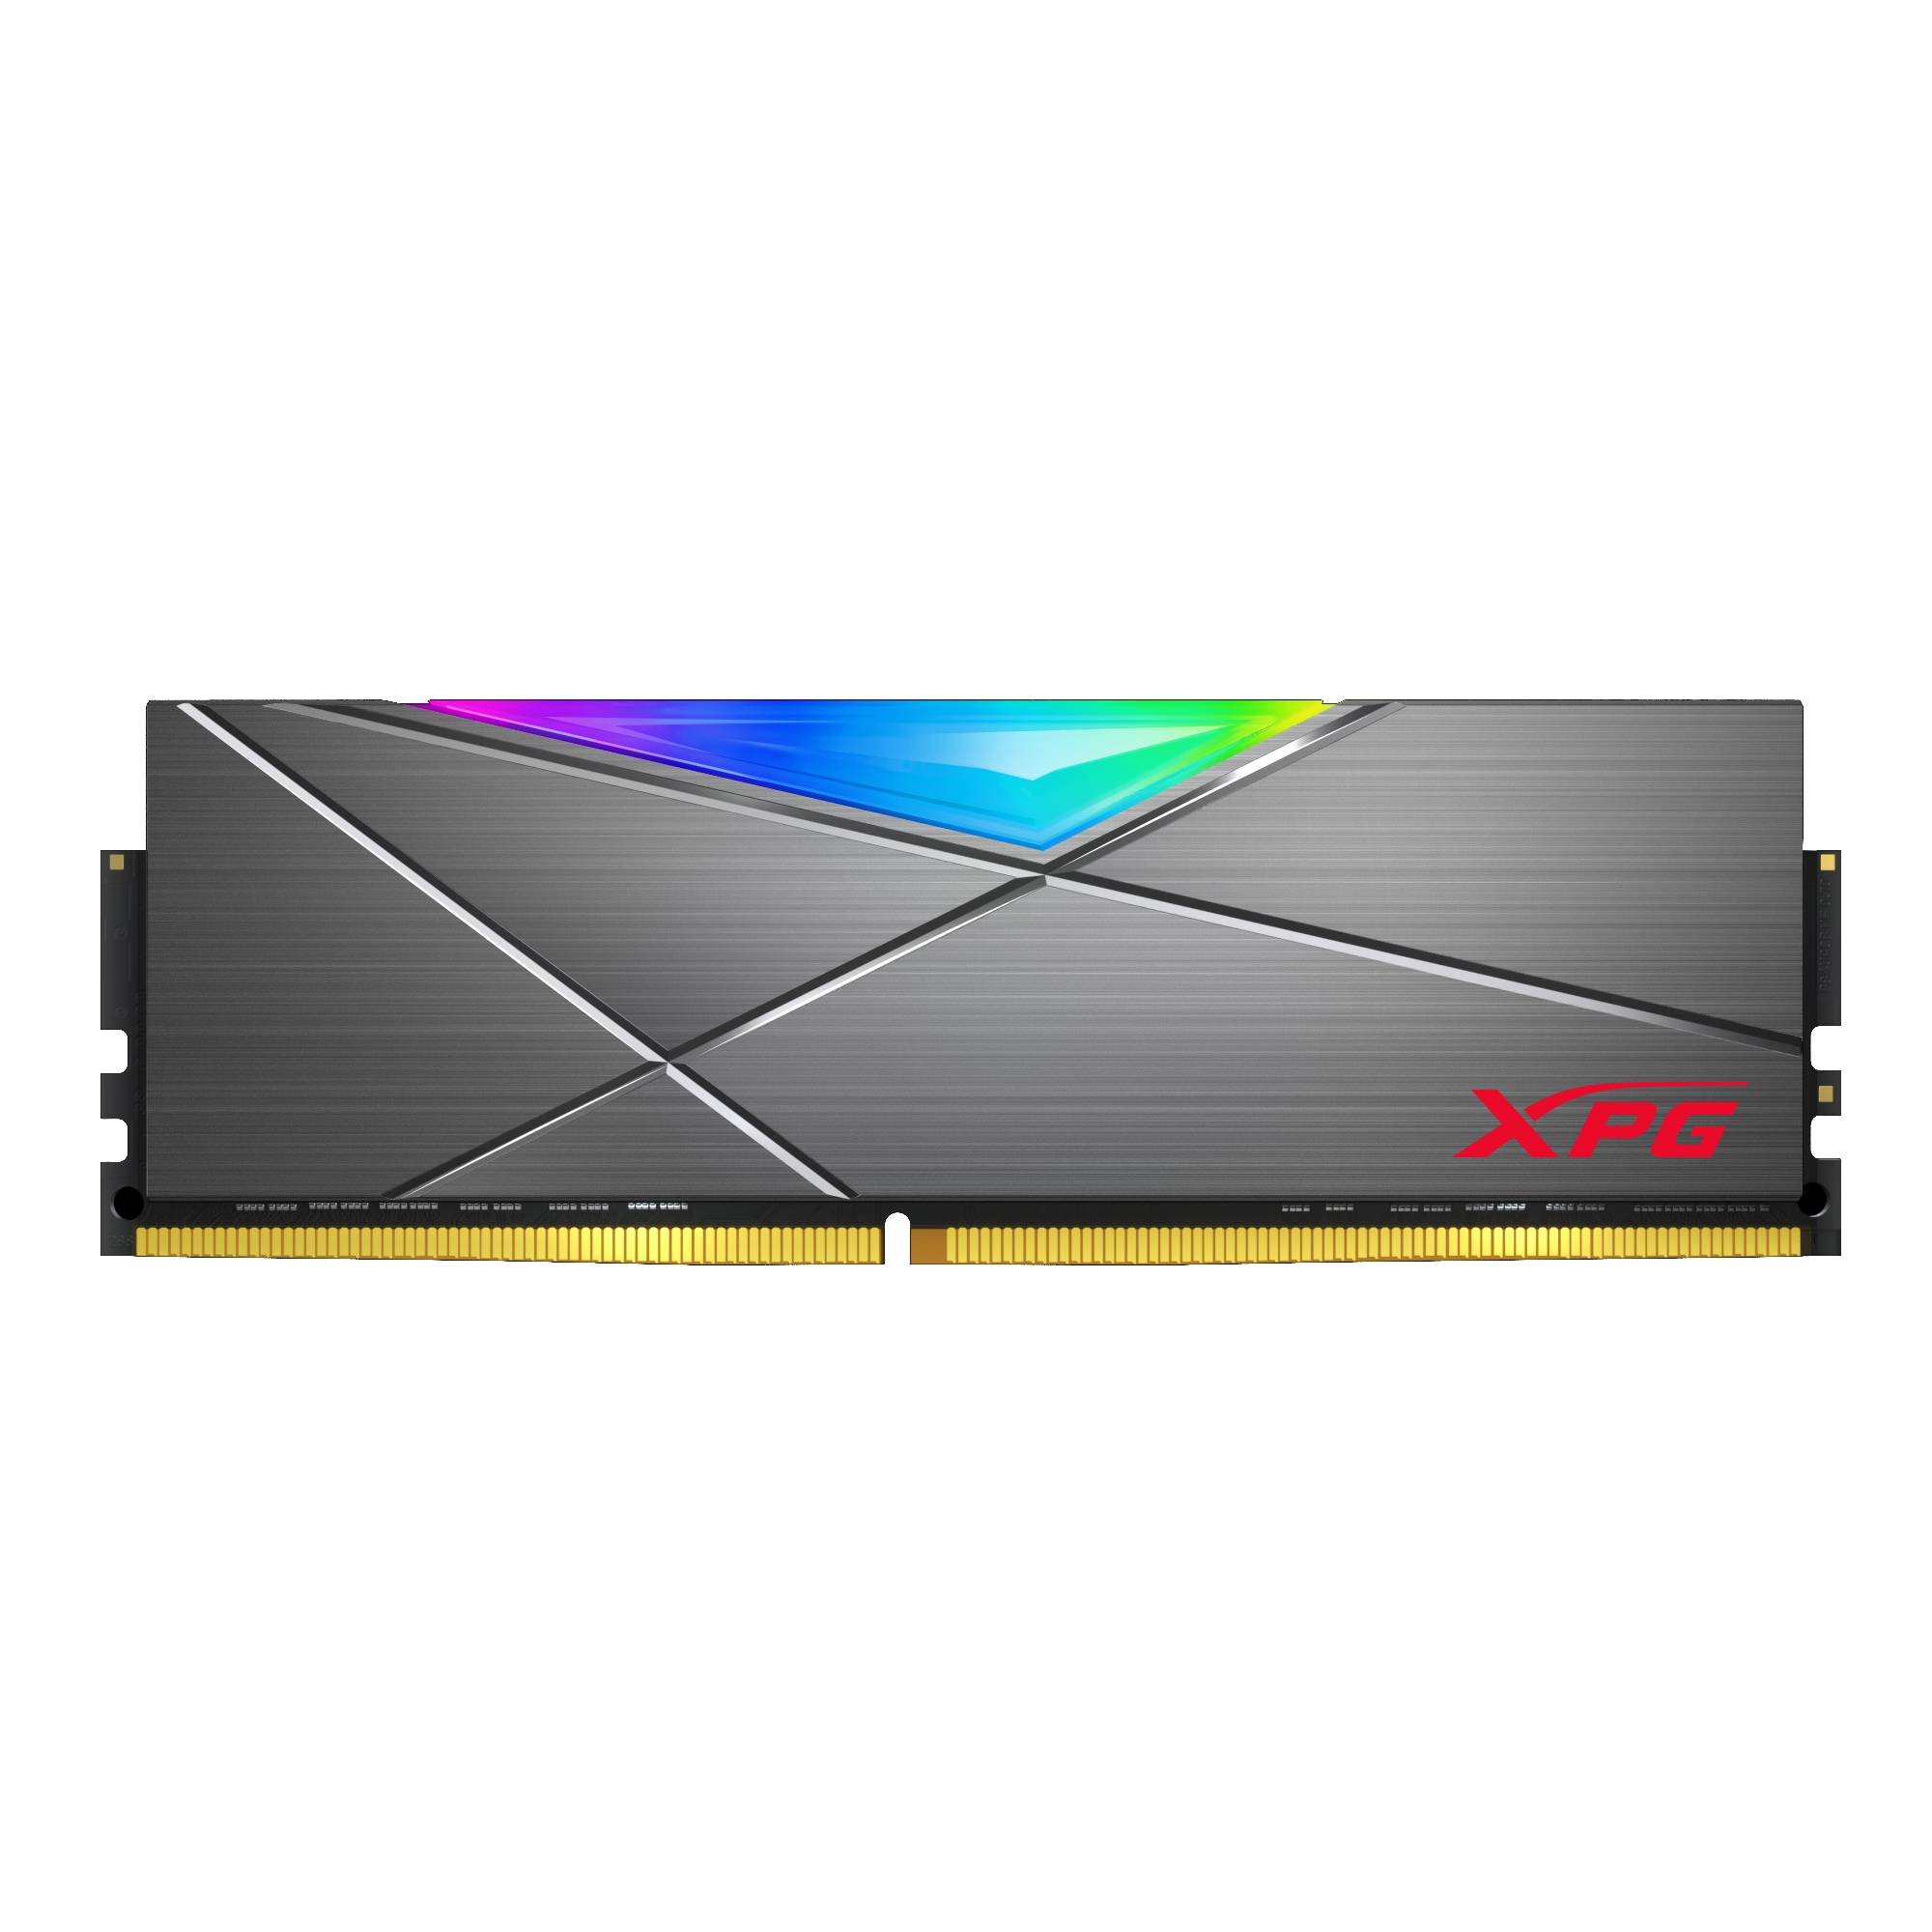 DDR4 RGB 超頻記憶體